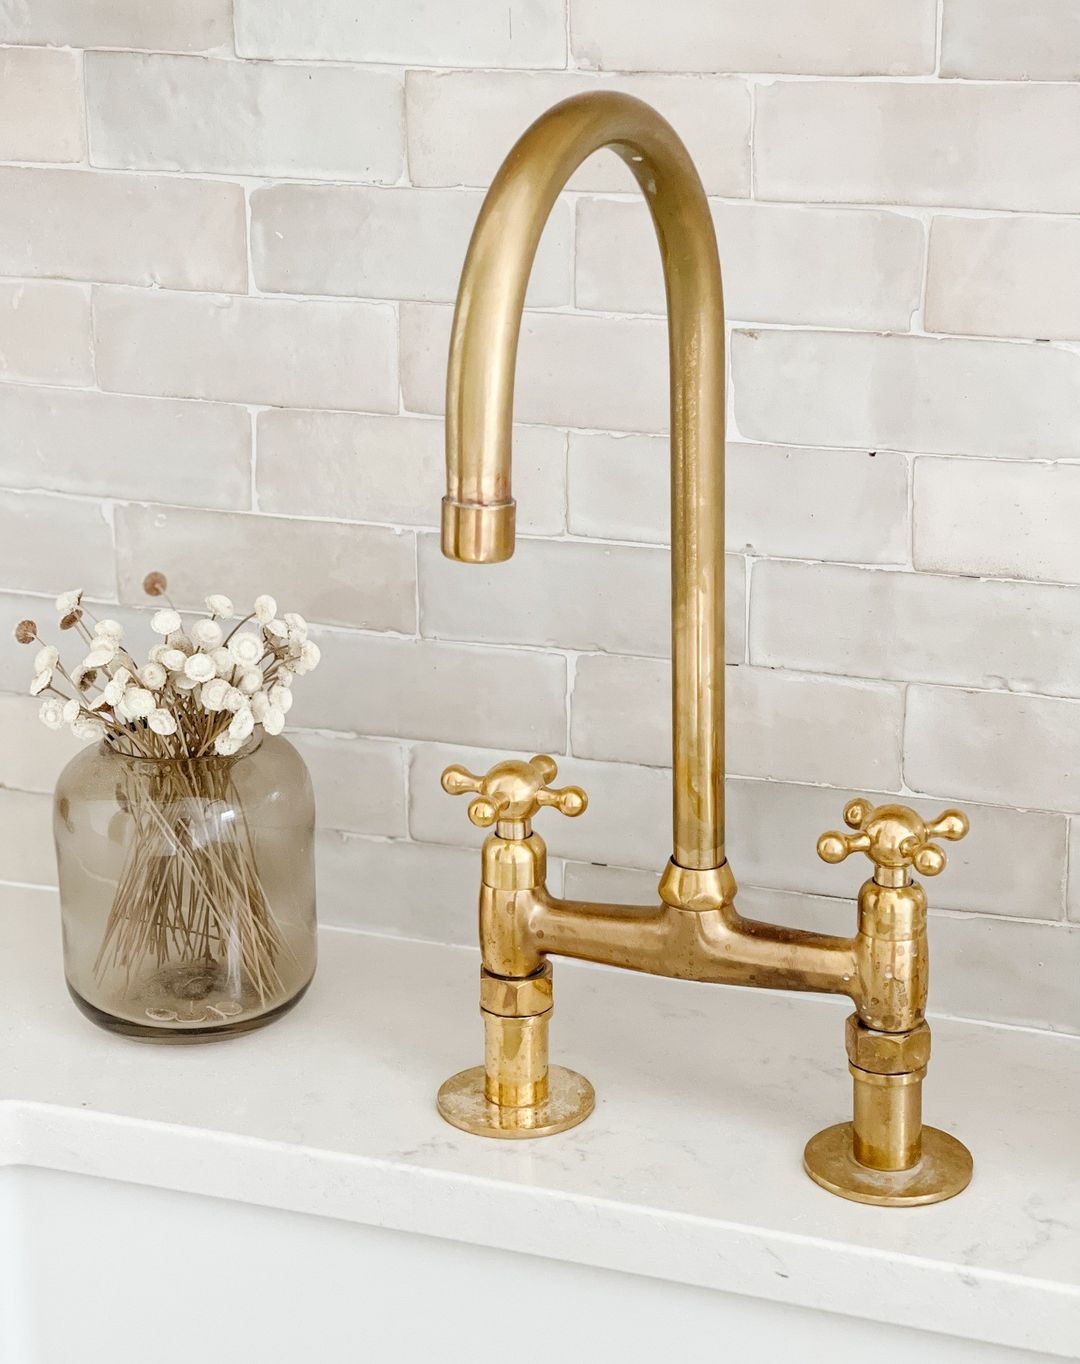 Brass Bridge Faucet - Antique Brass Kitchen Faucet VSB01